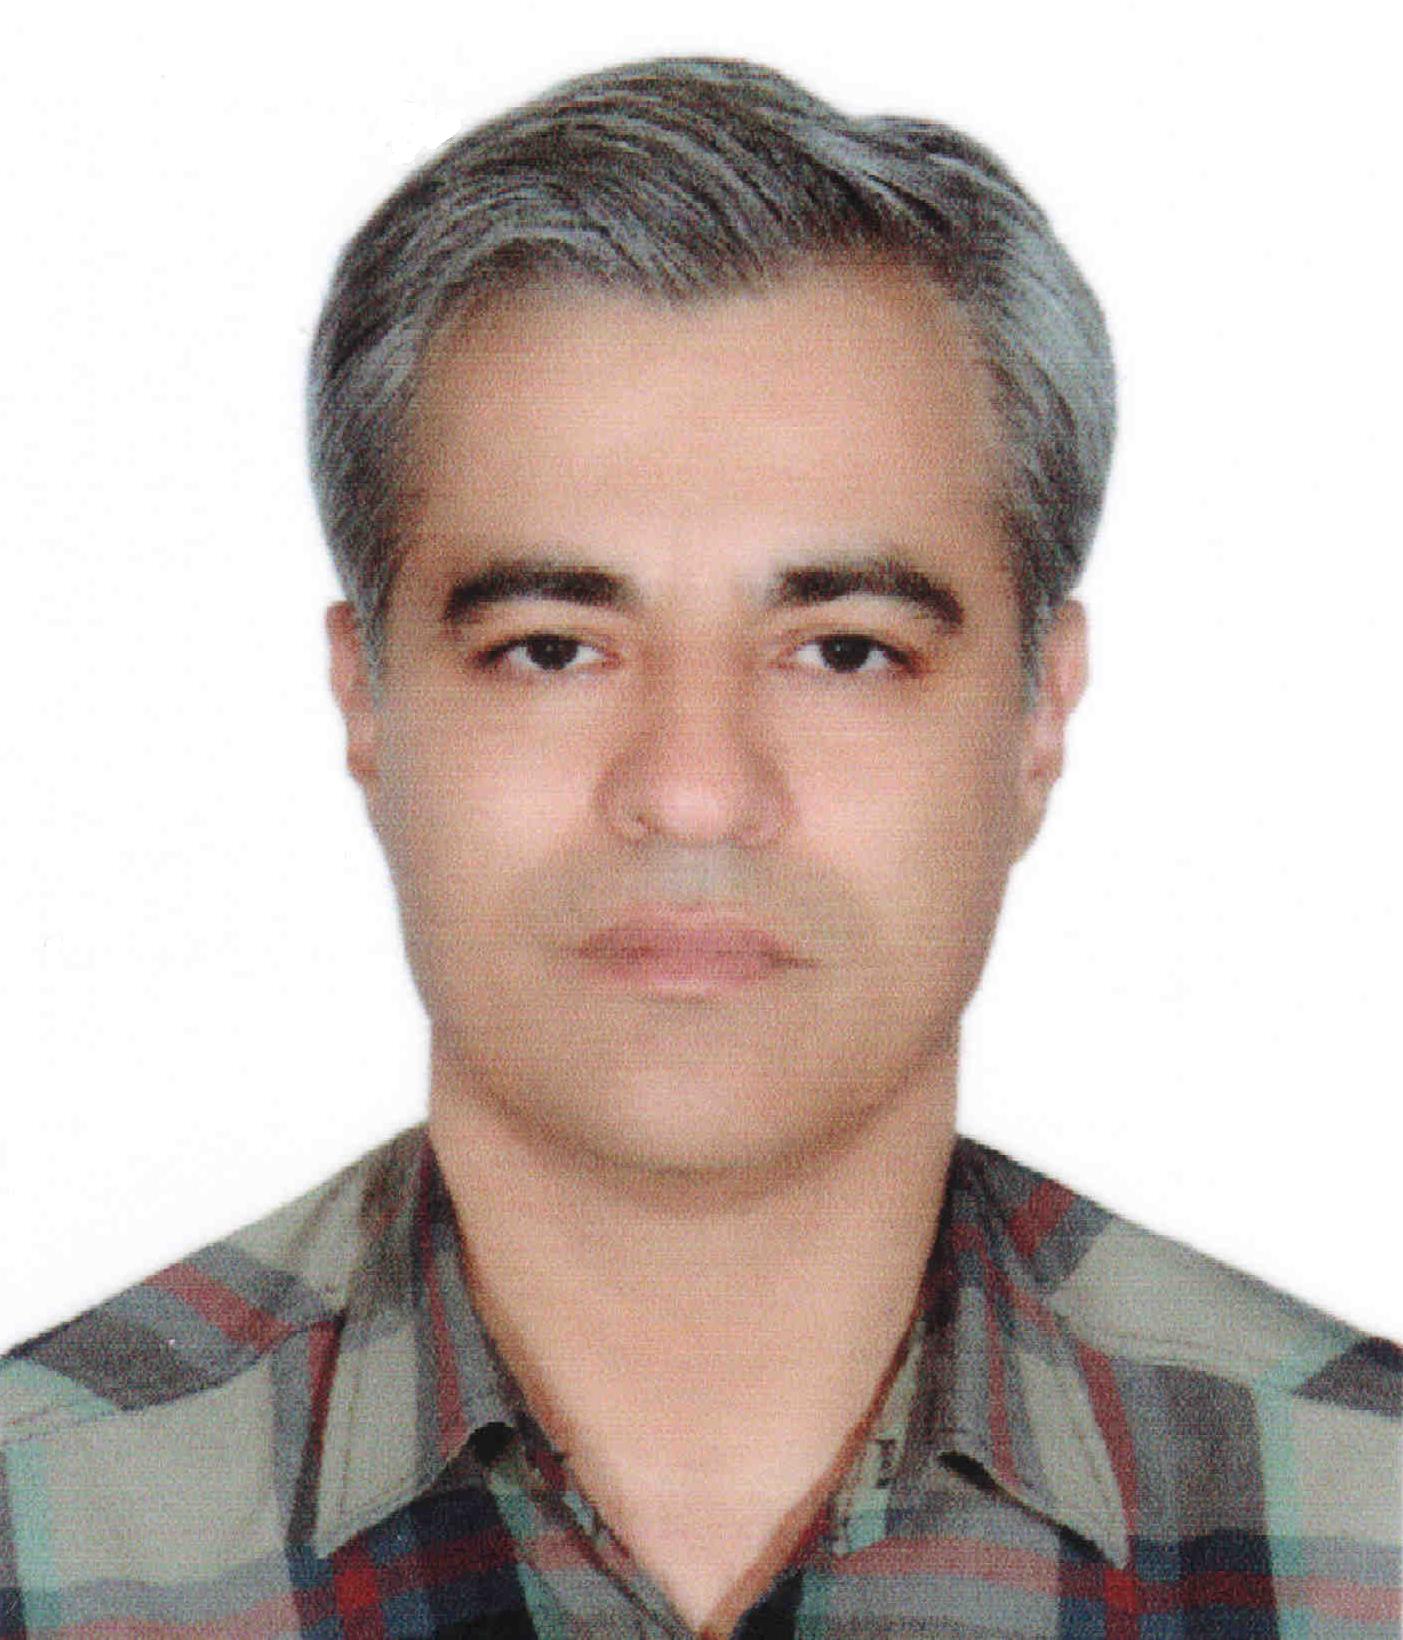 Ali-Reza Ghadrdan-Mashhadi